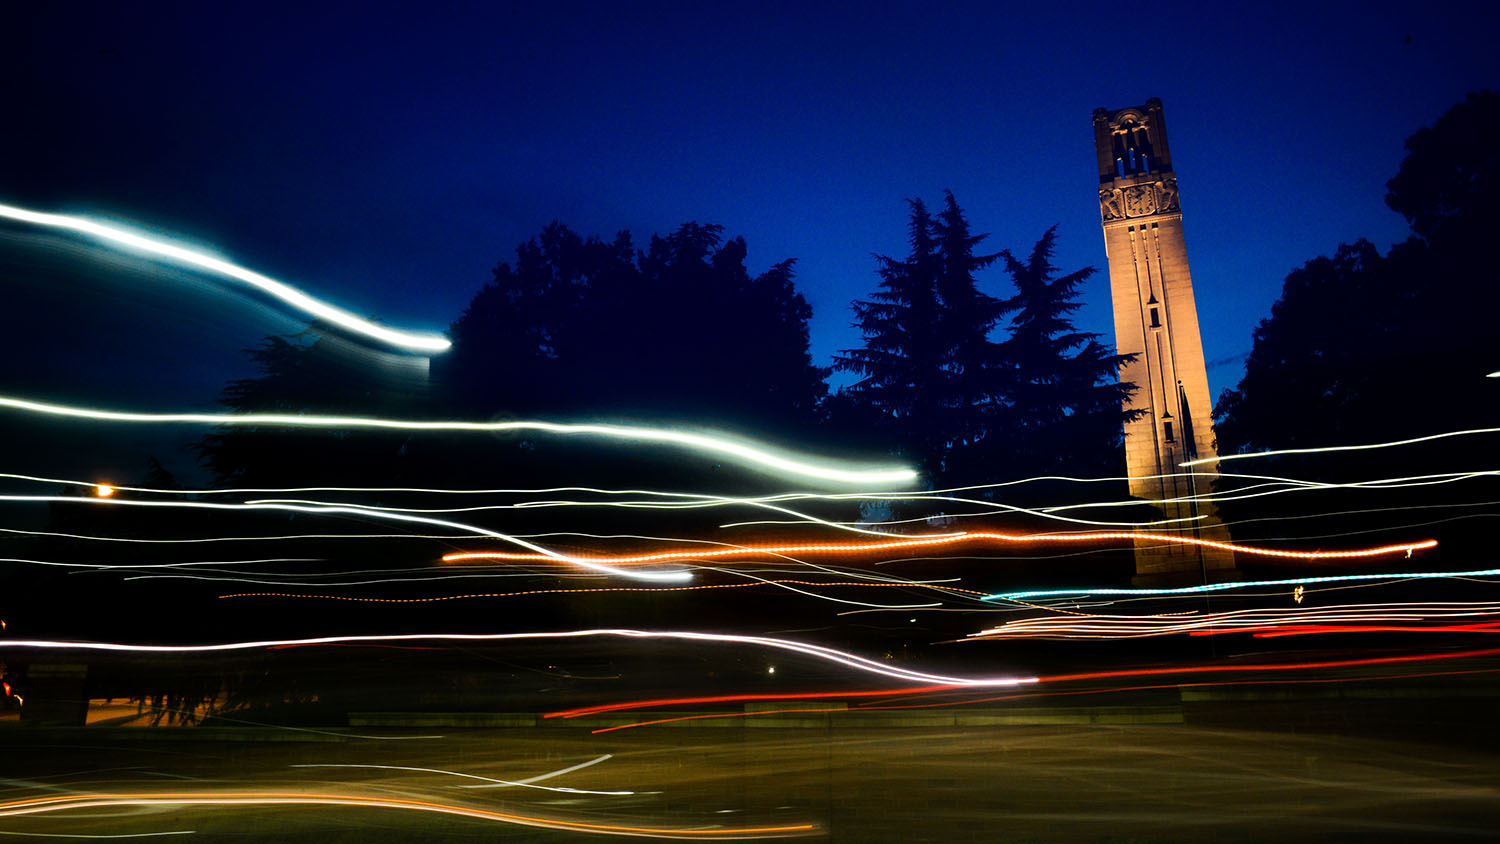 北卡罗来纳州钟塔在黄昏和夜间。照片由马克·霍尔